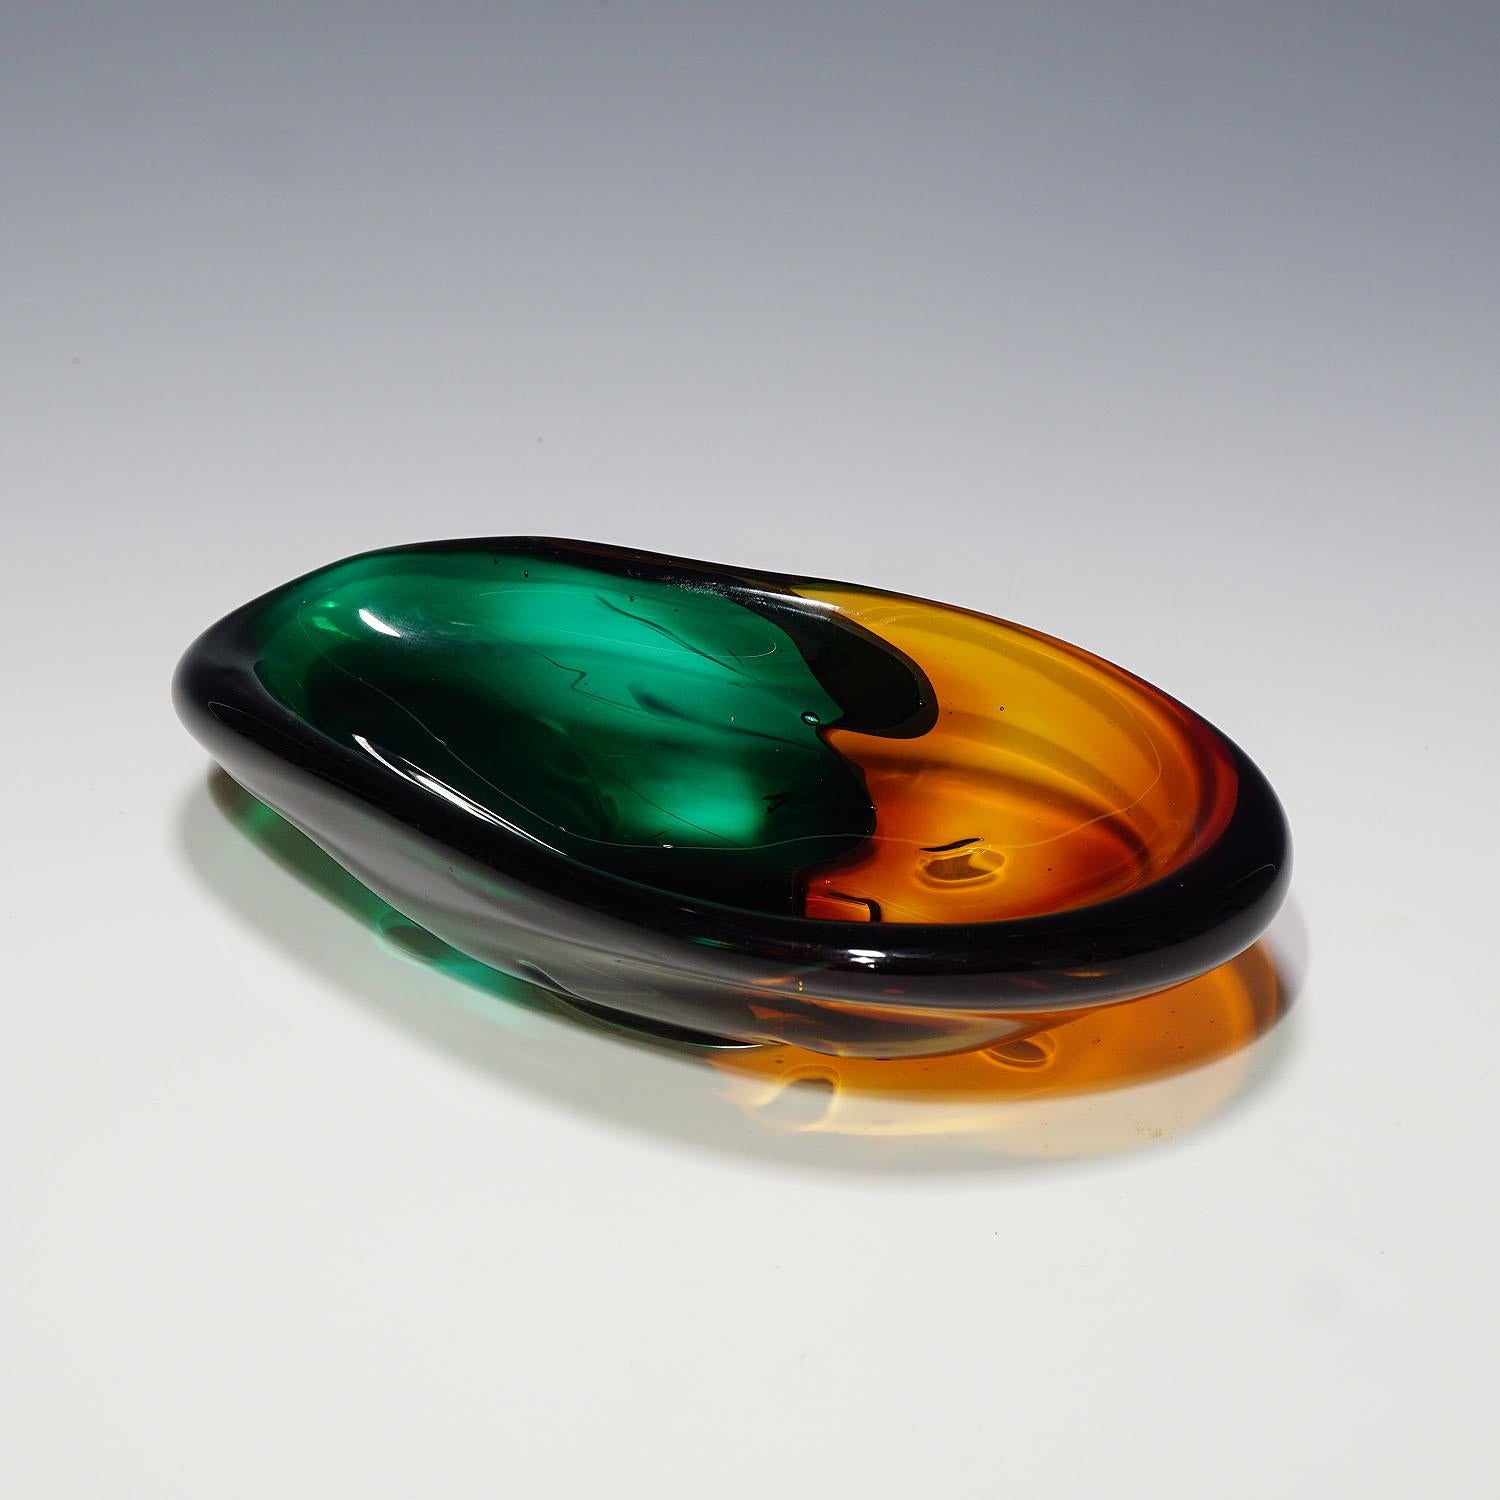 Eine Vintage-Glasschale im Stil von 1950 mit dickem, überlappendem grünem und orangefarbenem Glas und Klarglasüberfang. Auf dem Sockel signiert 